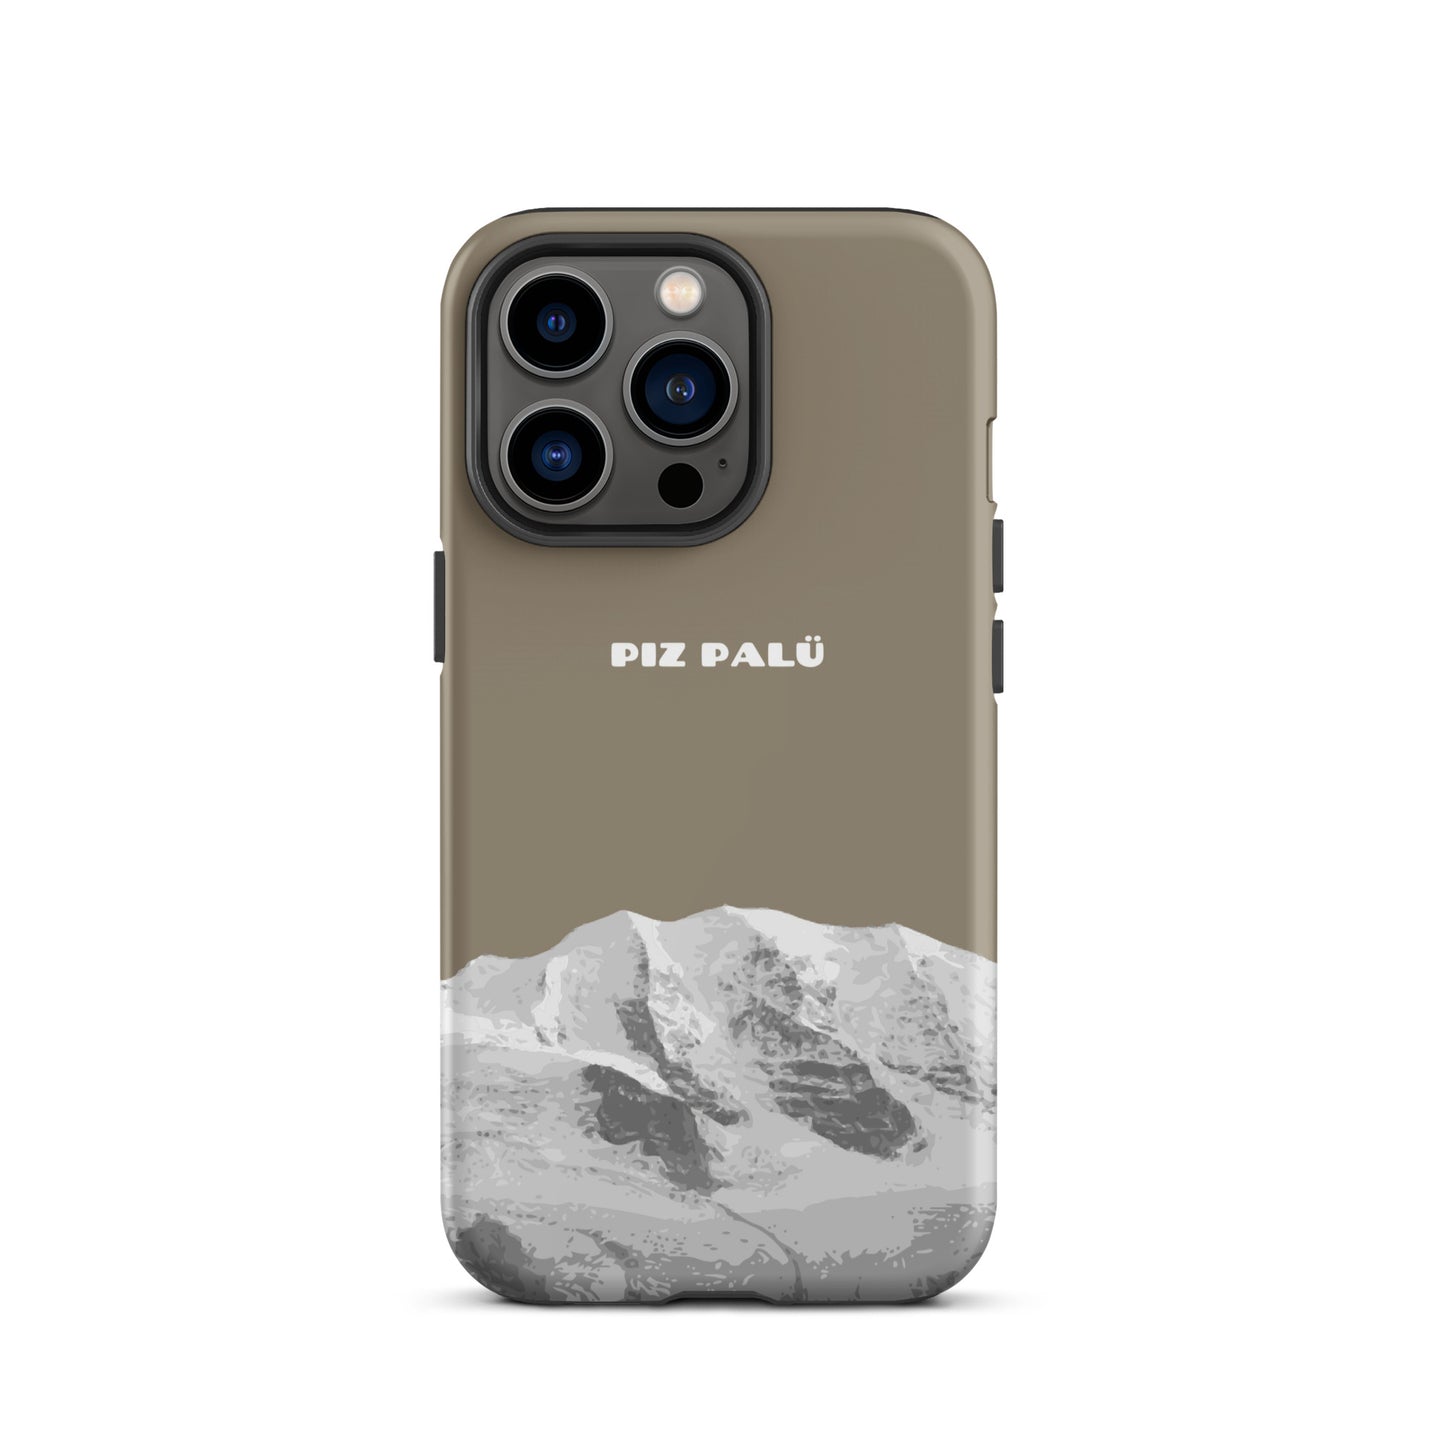 Hülle für das iPhone 13 Pro von Apple in der Farbe Graubrau, dass den Piz Palü in Graubünden zeigt.